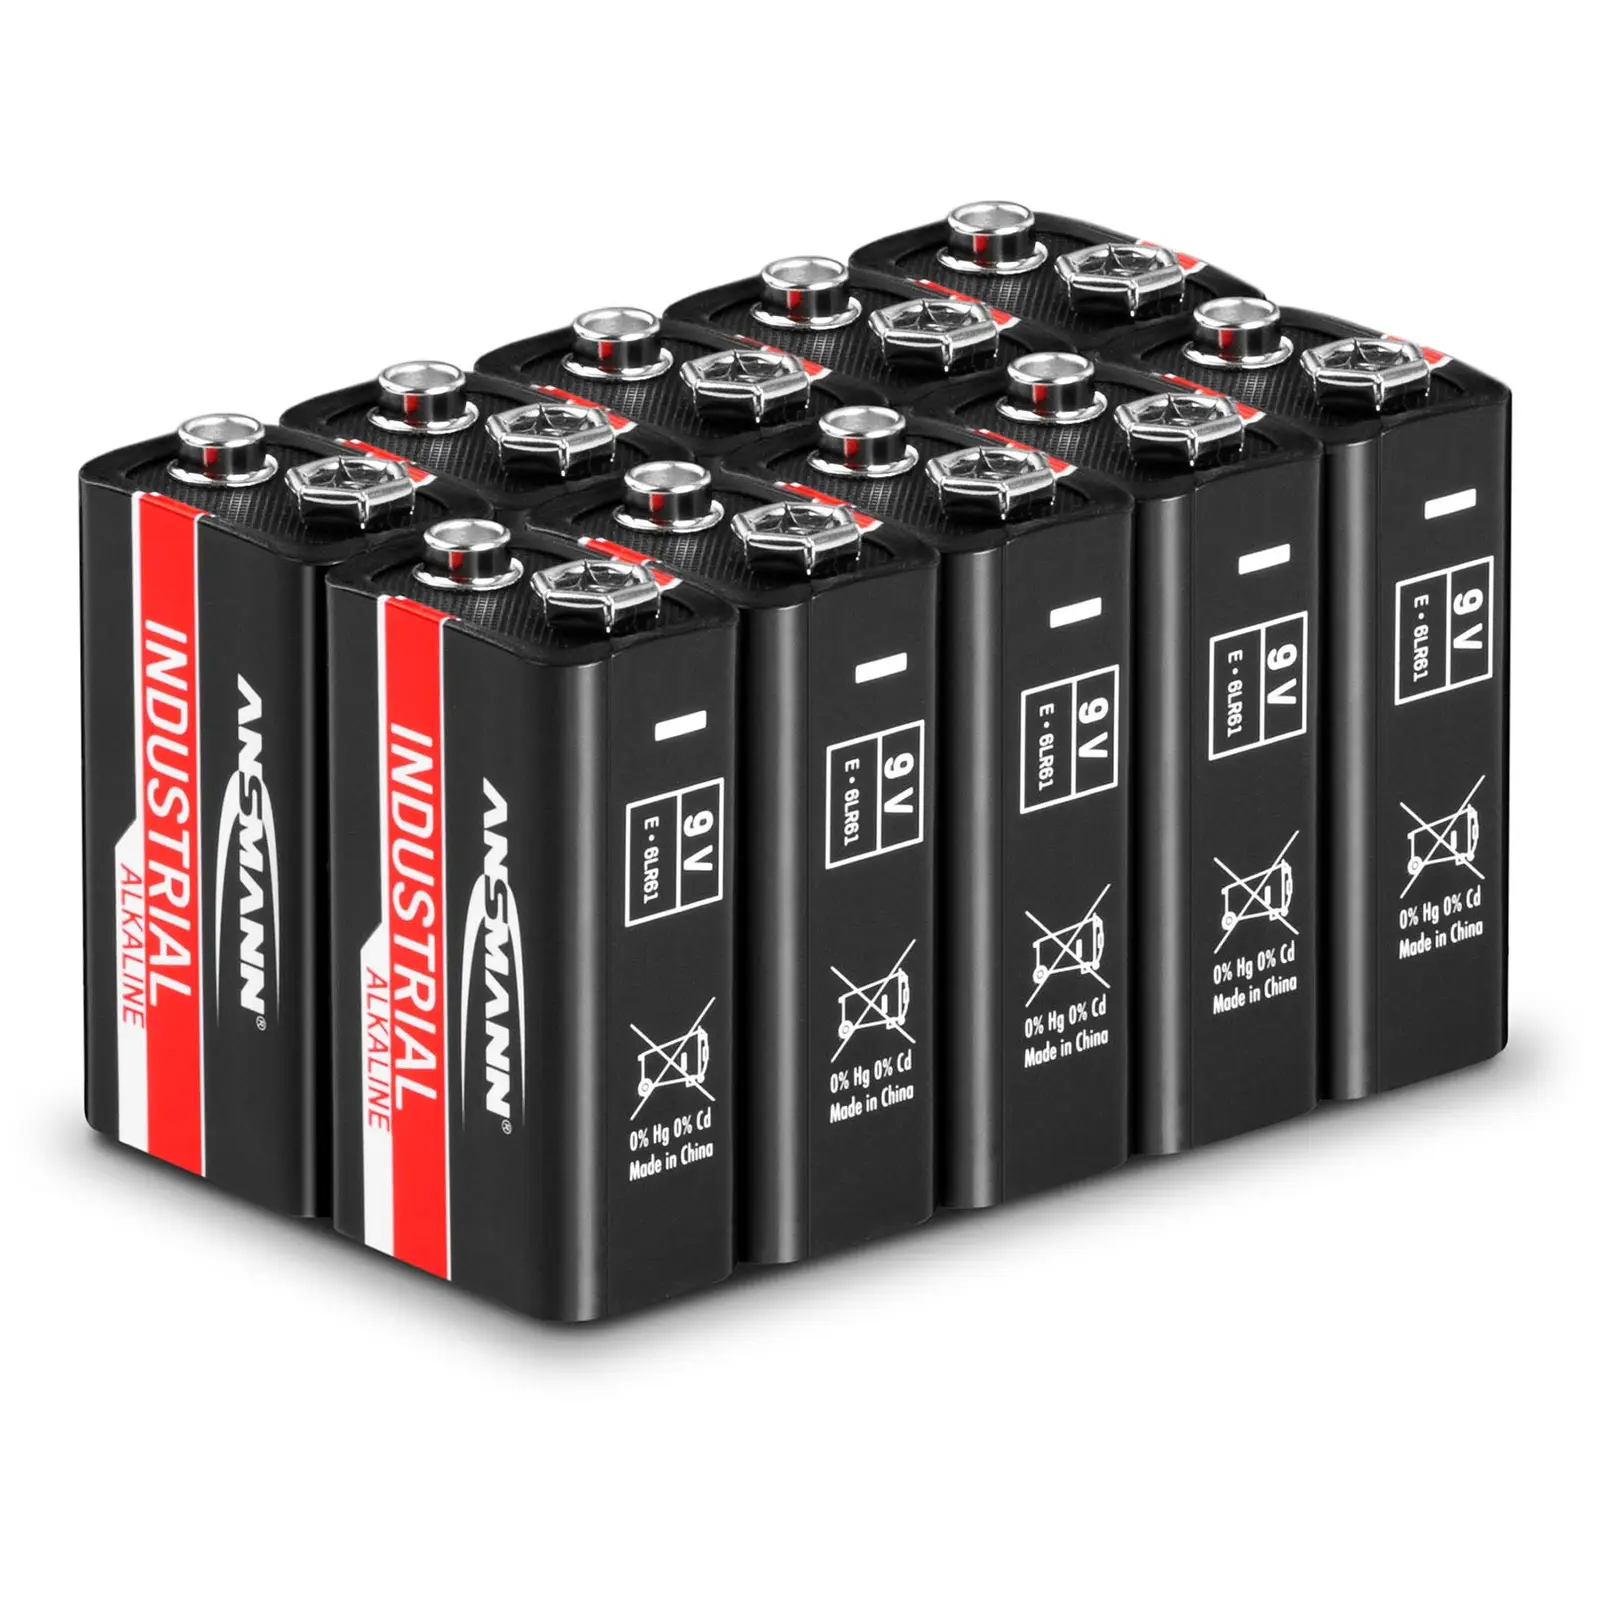 1505-0001 I Blok baterii alkalicznej przemysłowej / Industrial Alkaline Battery / Alkaline Batterie 9V Block